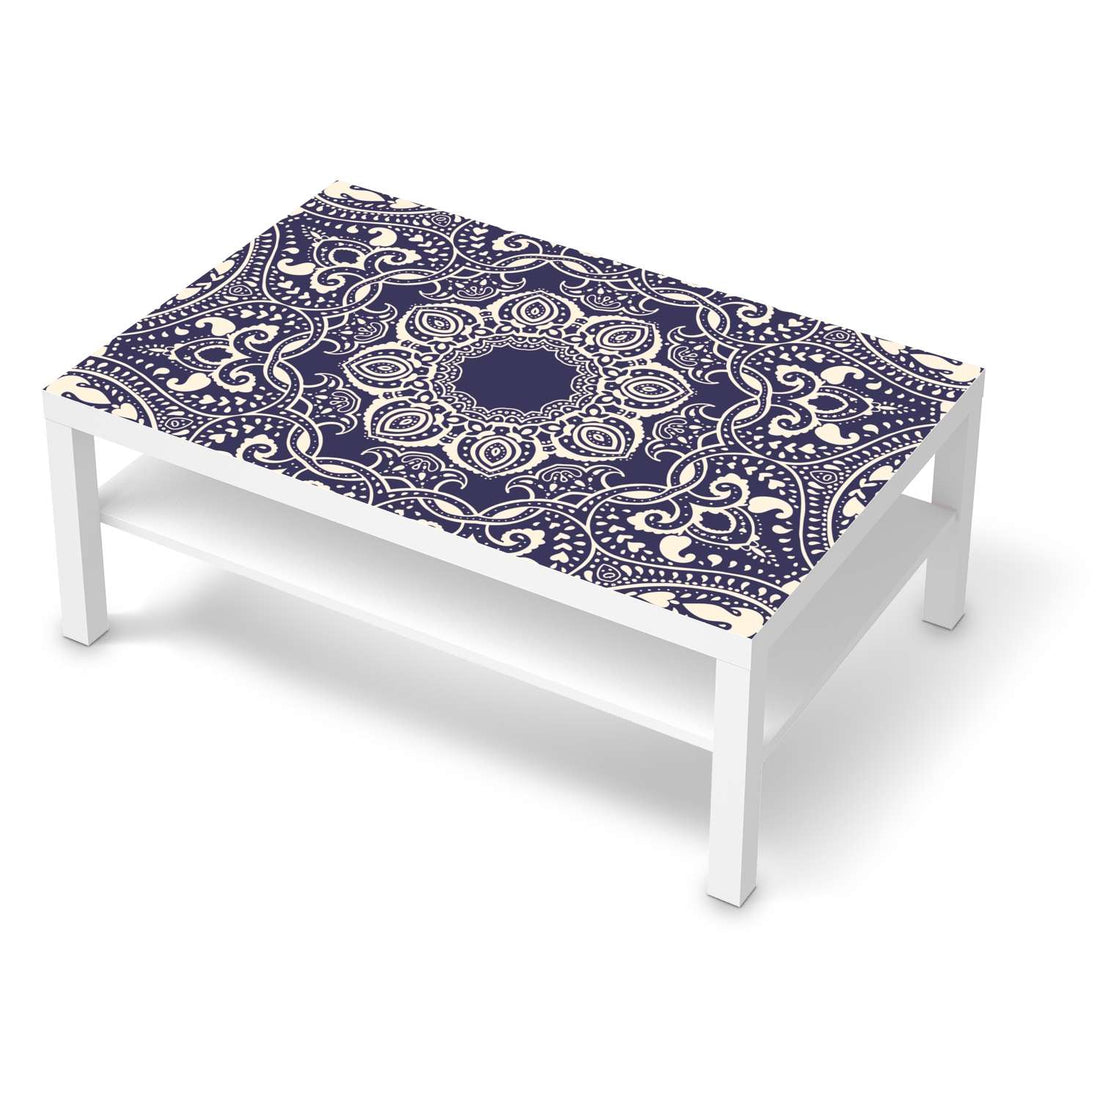 Klebefolie Blue Mandala - IKEA Lack Tisch 118x78 cm - weiss